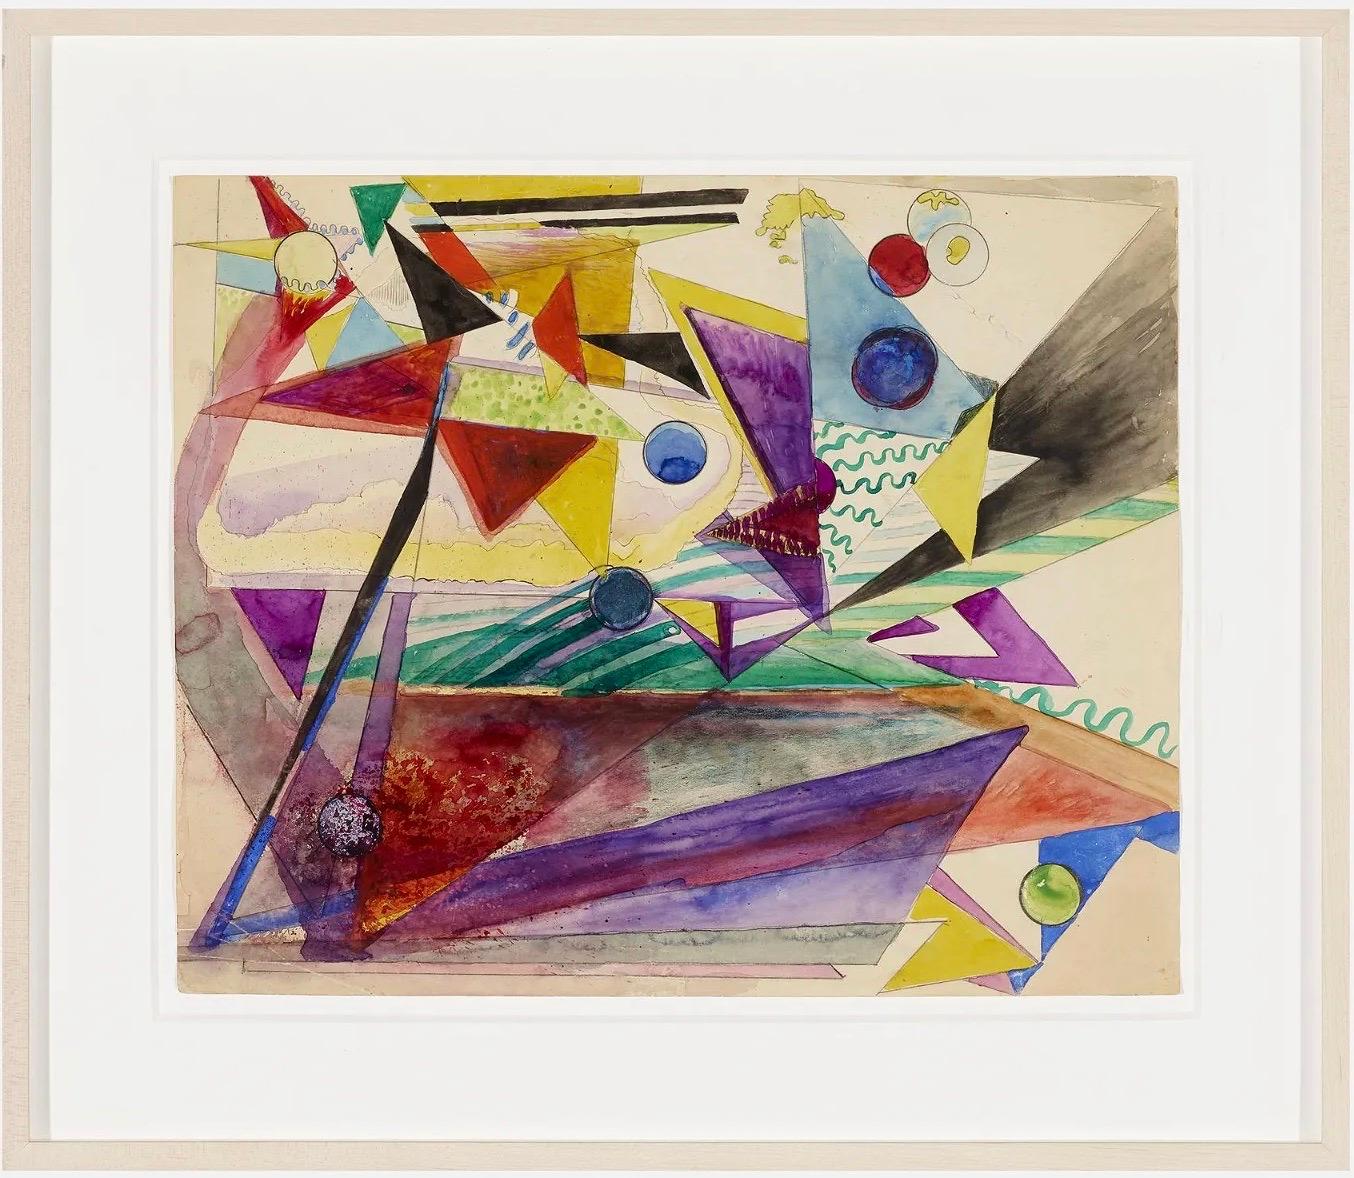 Œuvre abstraite et non objectif sur papier - Dessin d'une artiste de Guggenheim représentant une femme, années 1940 - Art de Hilla Rebay von Ehrenwiesen